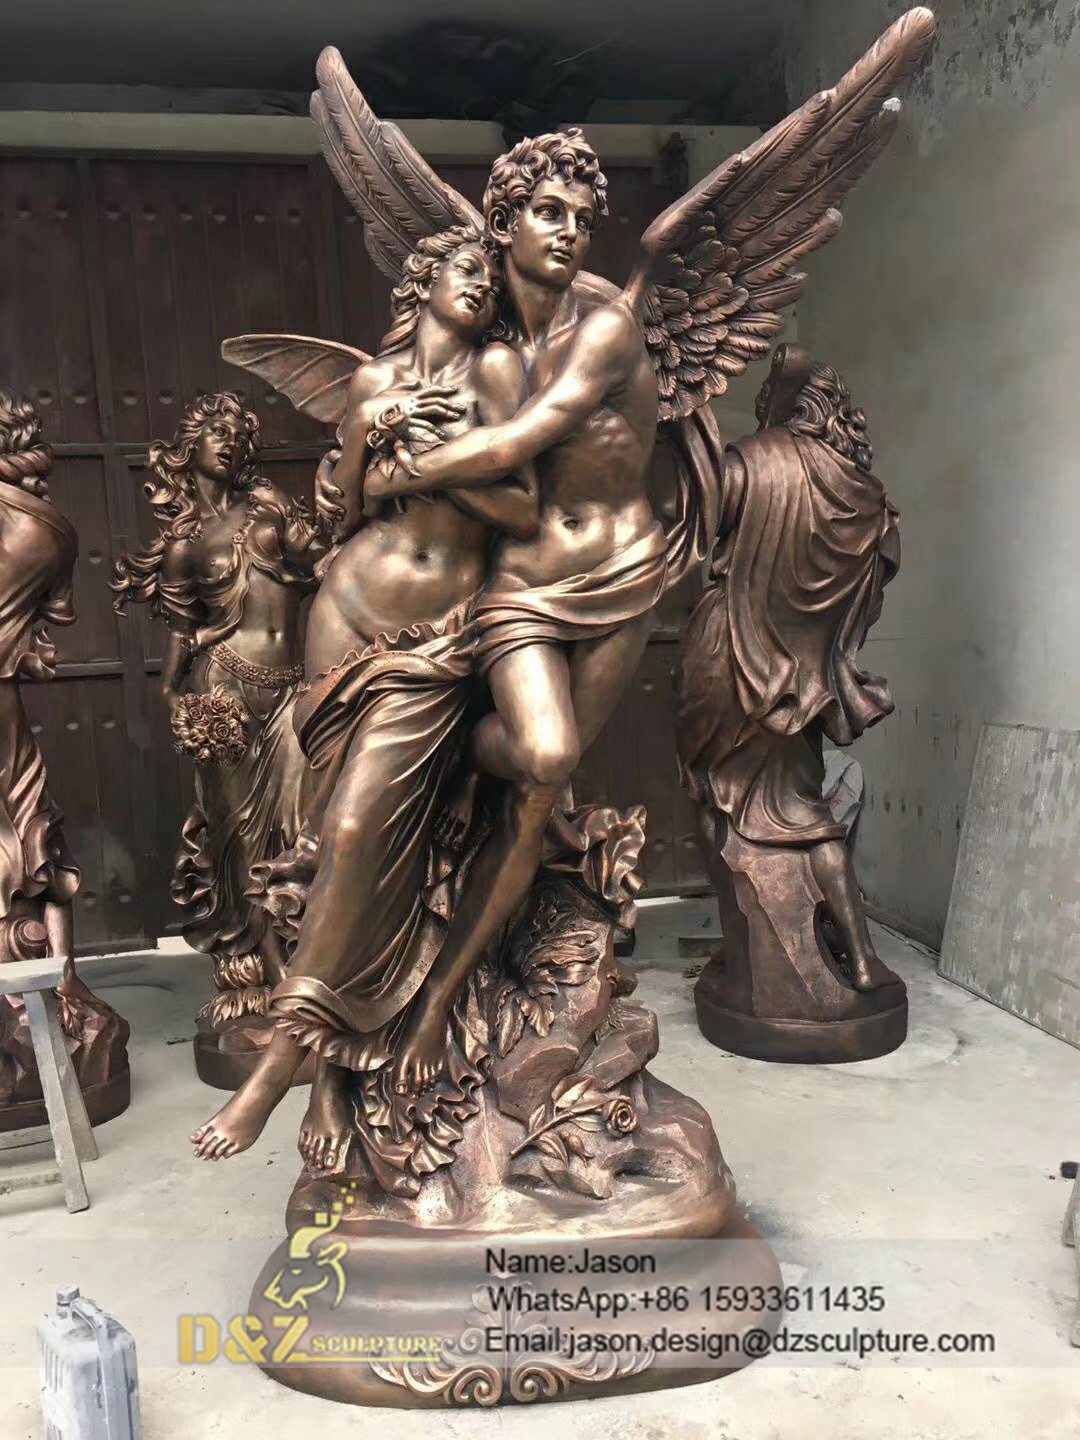 Sculpture of men and women